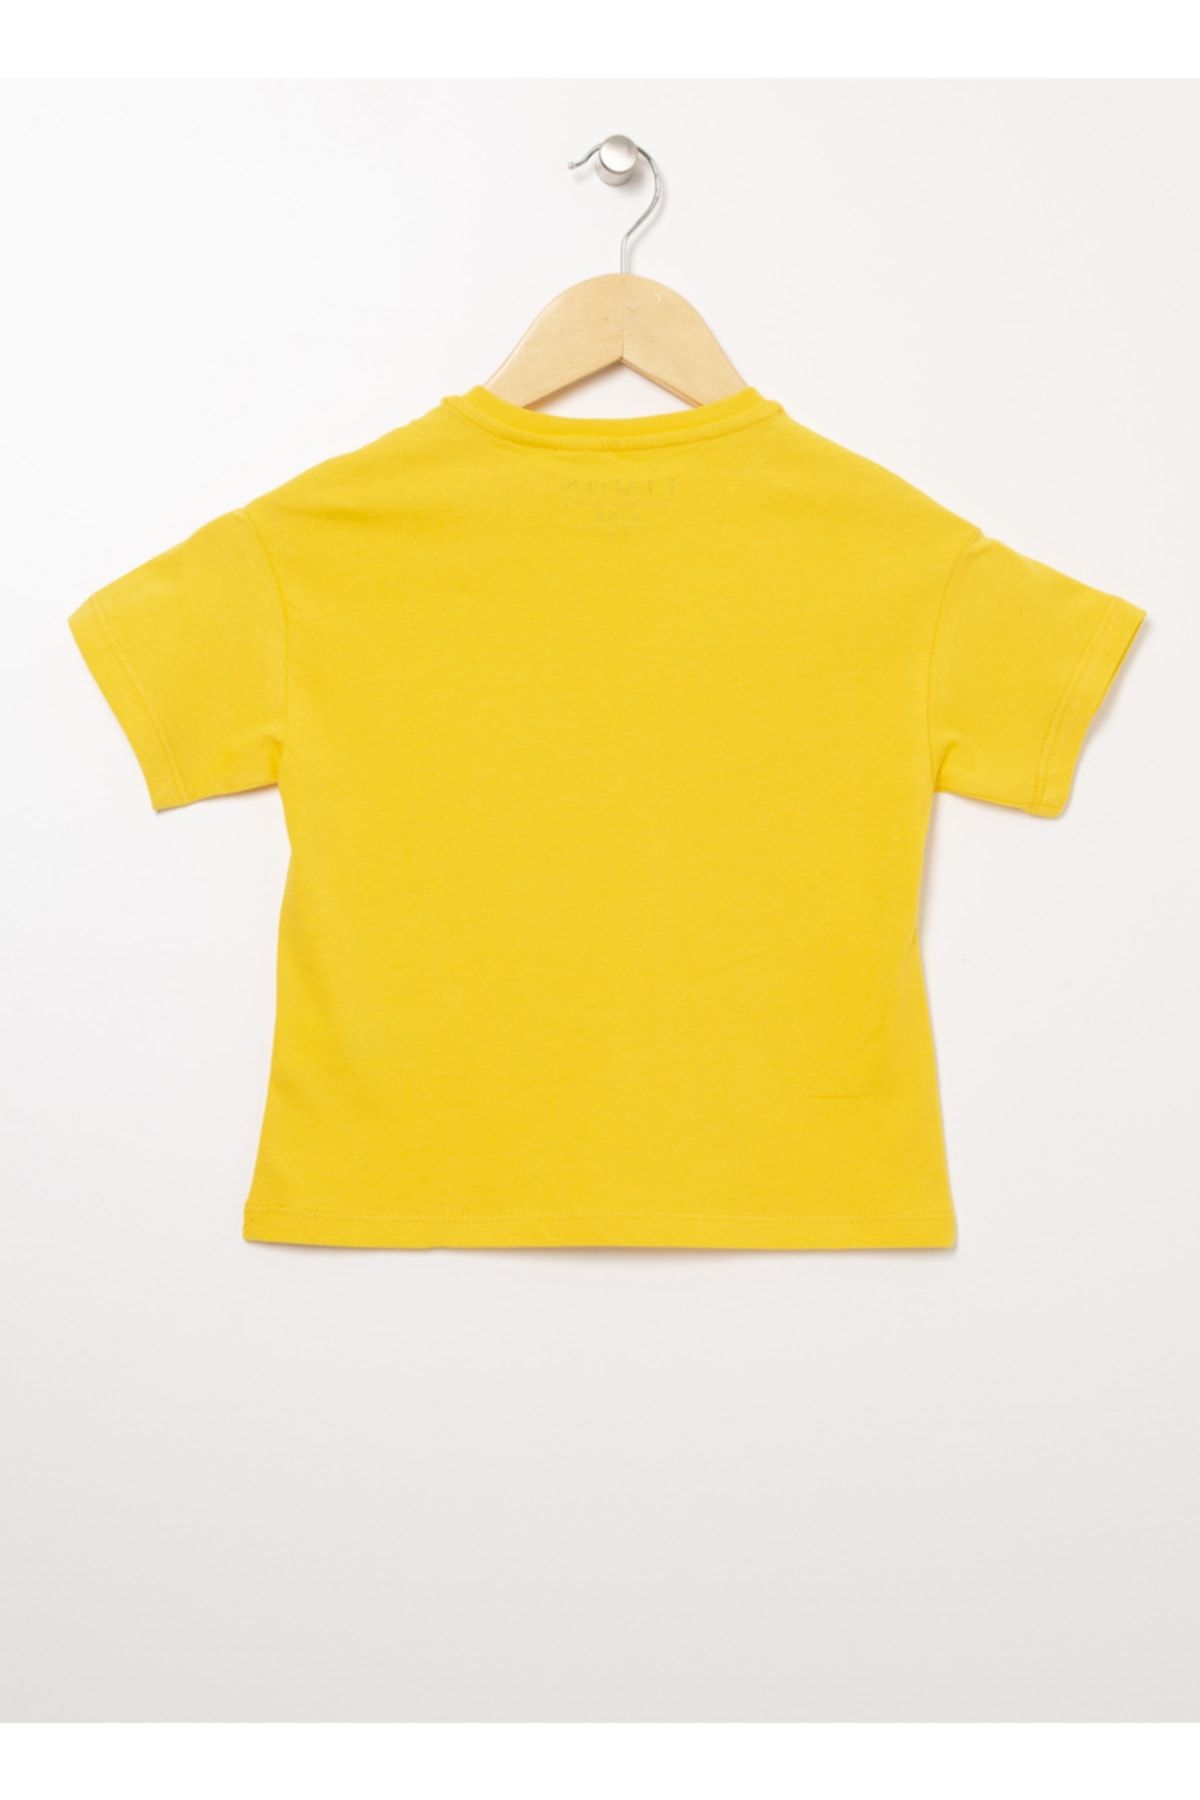 LİMON COMPANY Limon Bisiklet Yaka Standart Kalıp Baskılı Sarı Erkek Çocuk T-shirt - Bscboy 03